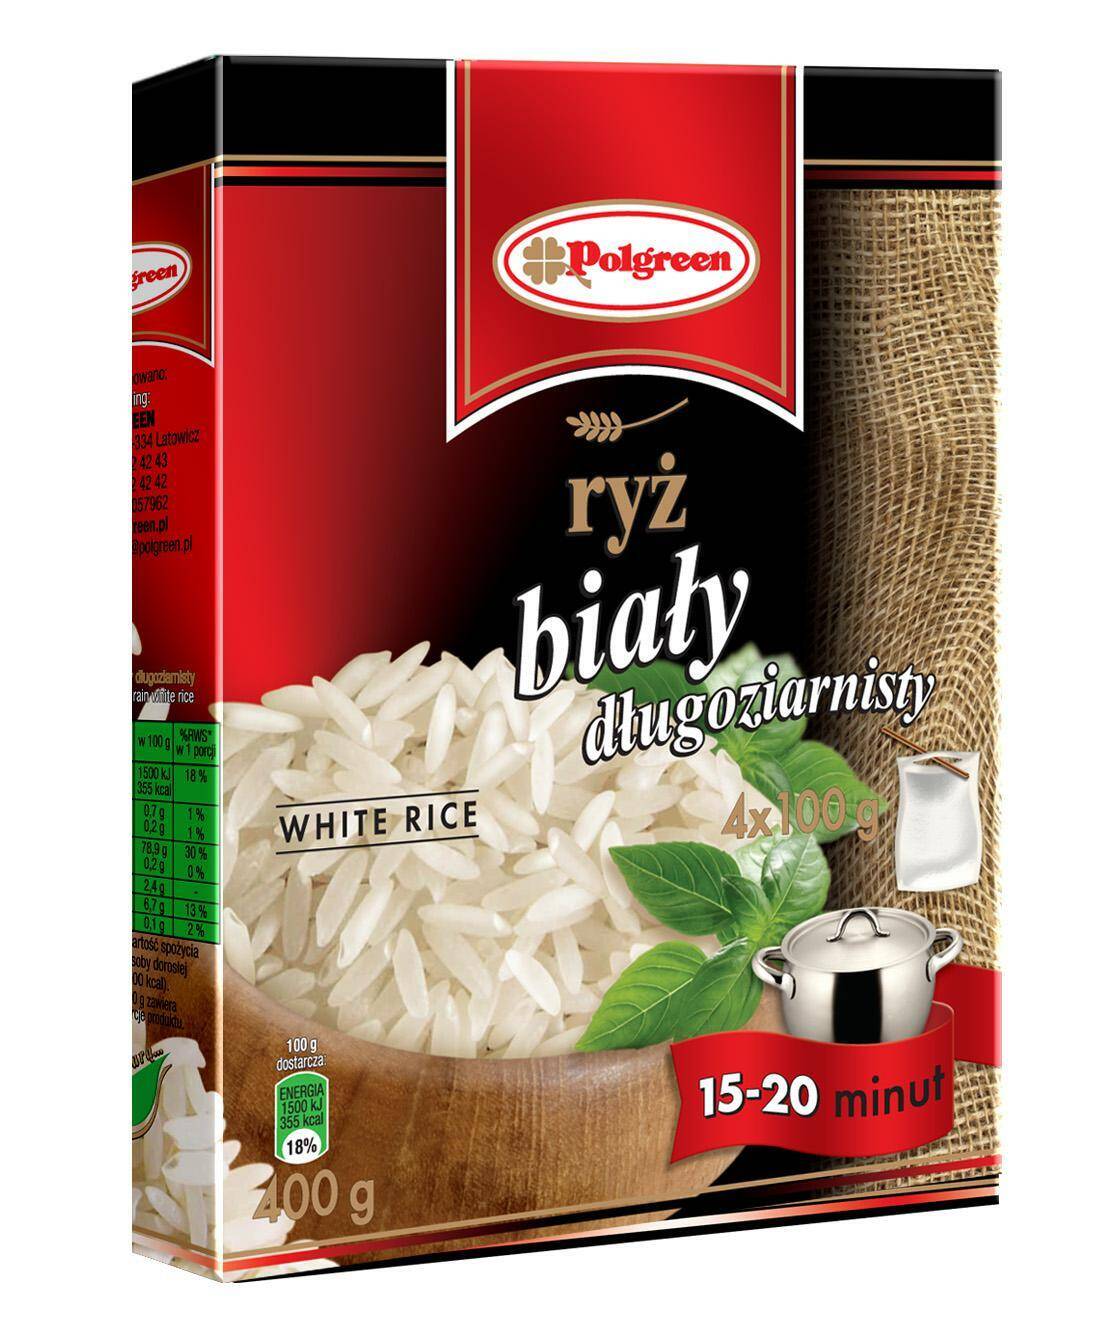 POLGREEN ryż biały 4x100g*12.